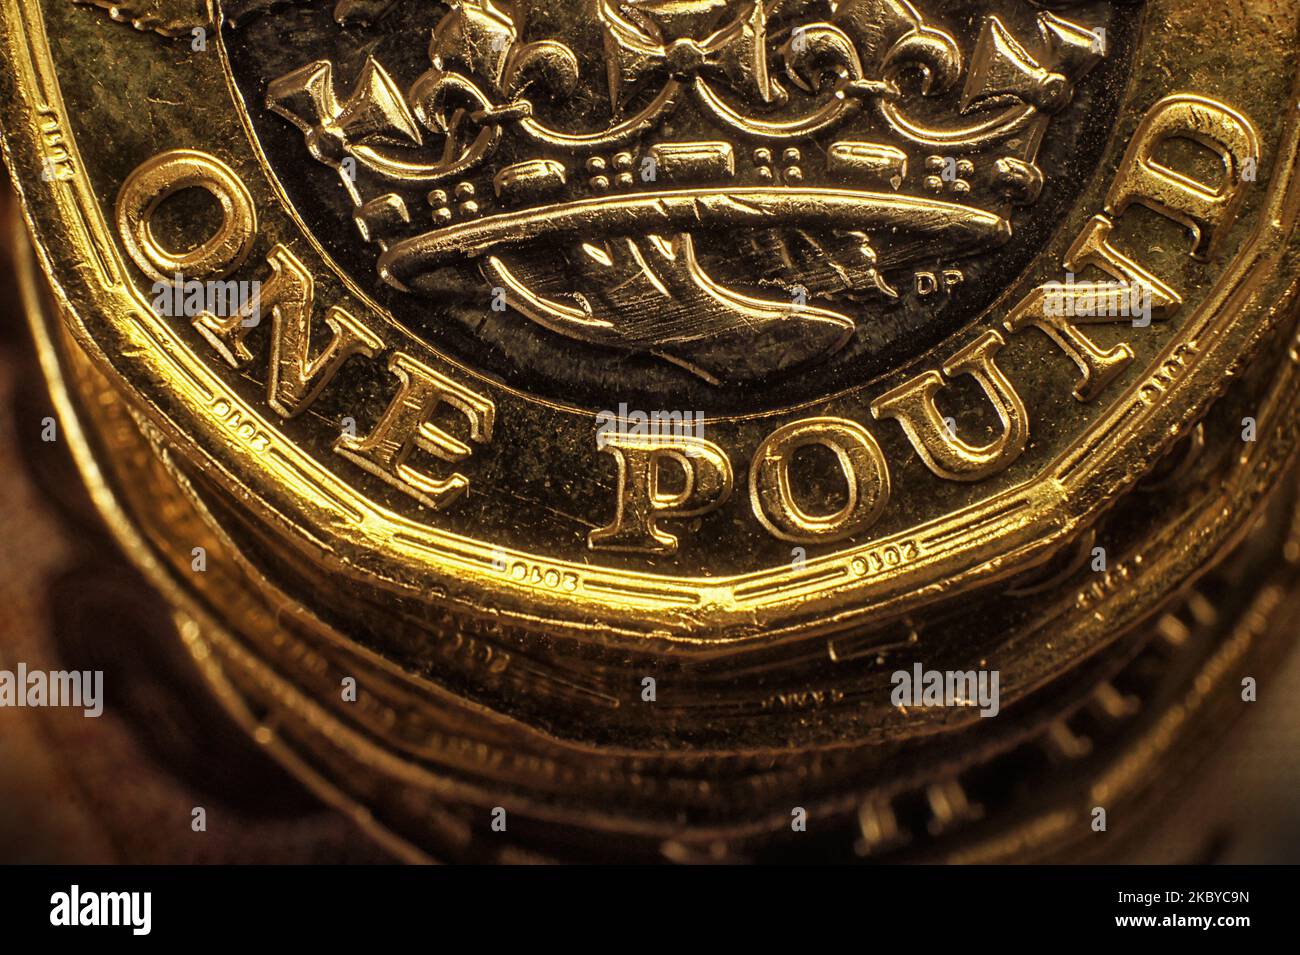 Primo piano dettaglio del British UK One Pound Coin sulla cima di un mucchio di monete. La nuova moneta bimetallica da una libbra è stata introdotta per la prima volta nel 2017. Foto Stock